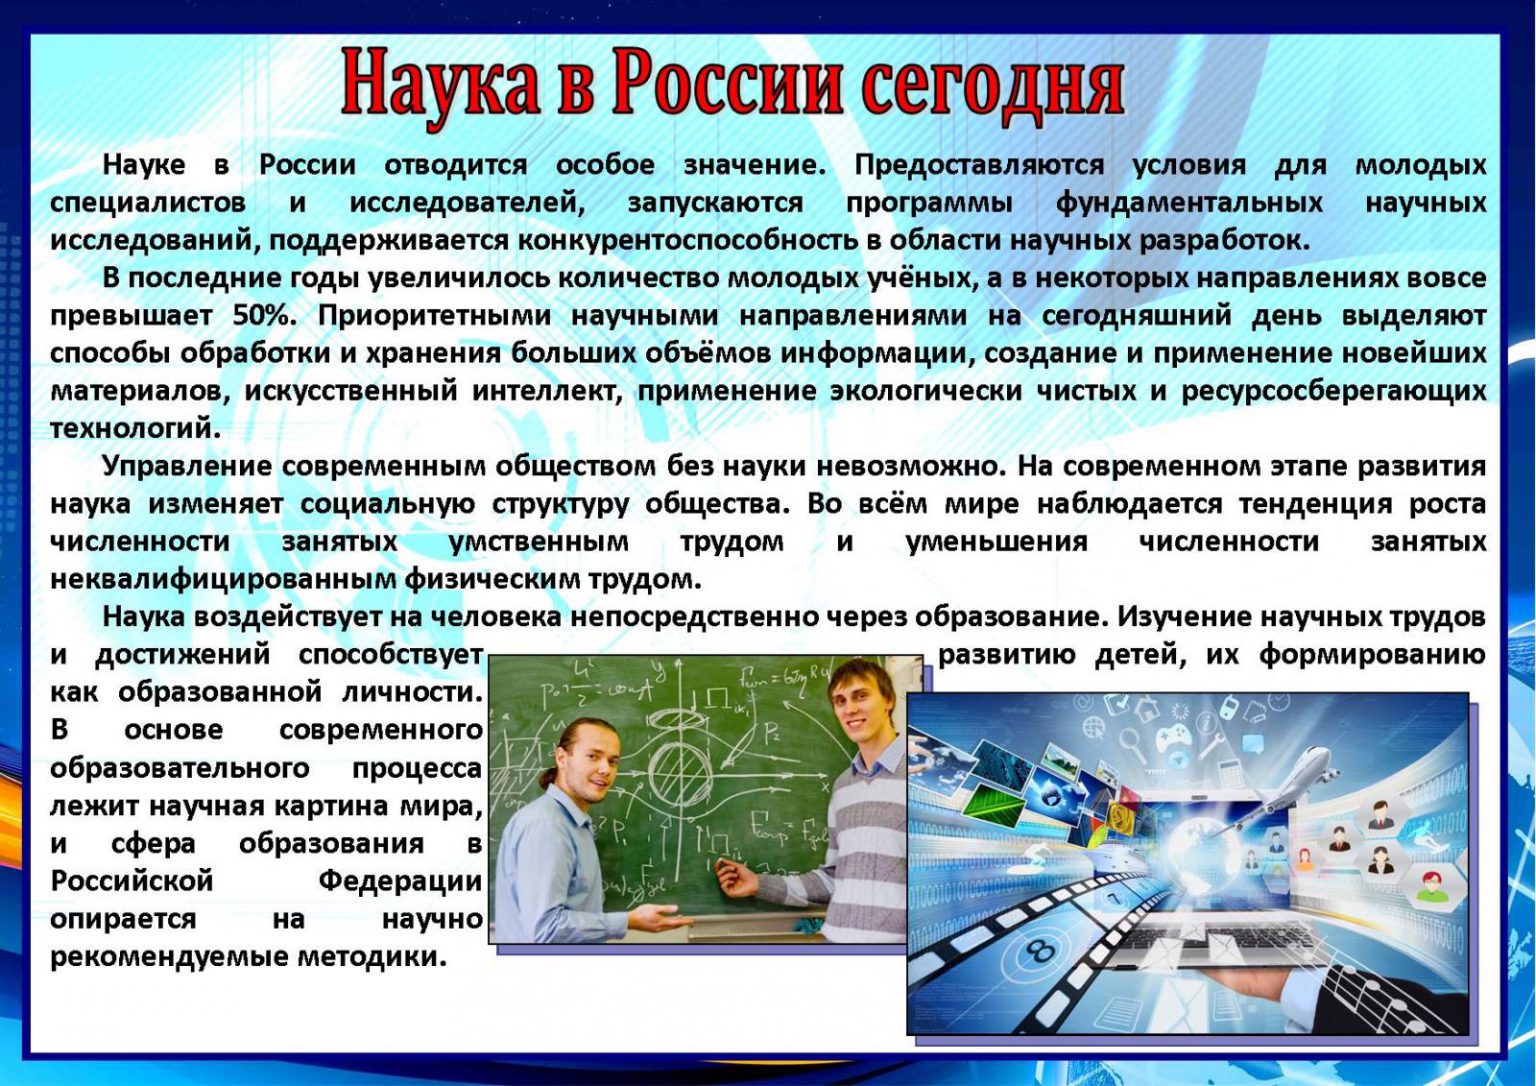 Год науки и технологий в России